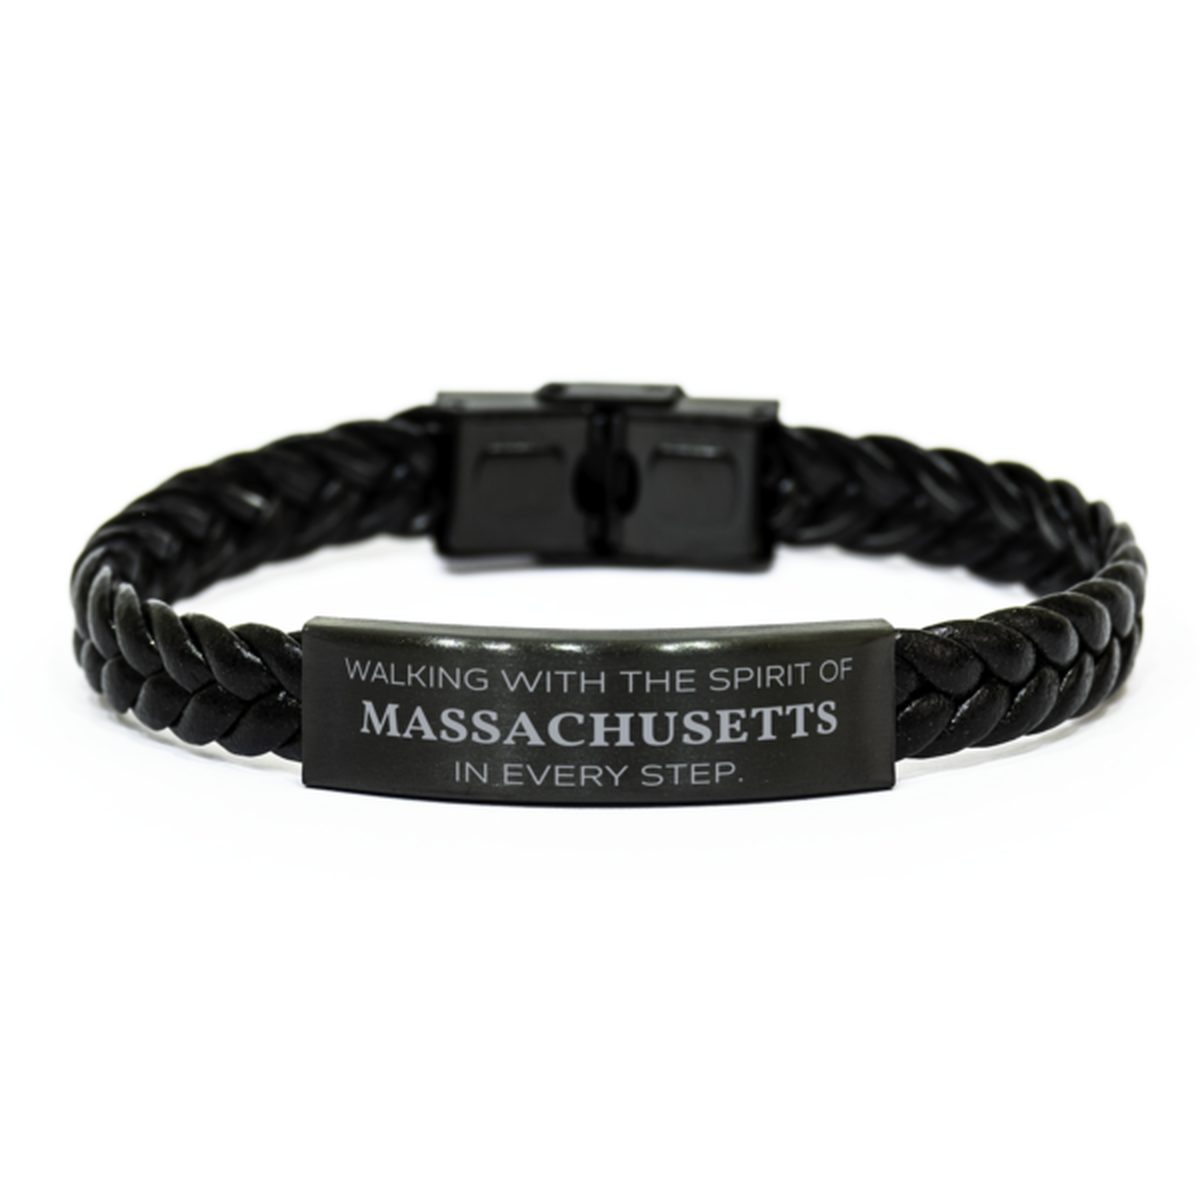 Massachusetts Gifts, Walking with the spirit, Love Massachusetts Birthday Christmas Braided Leather Bracelet For Massachusetts People, Men, Women, Friends